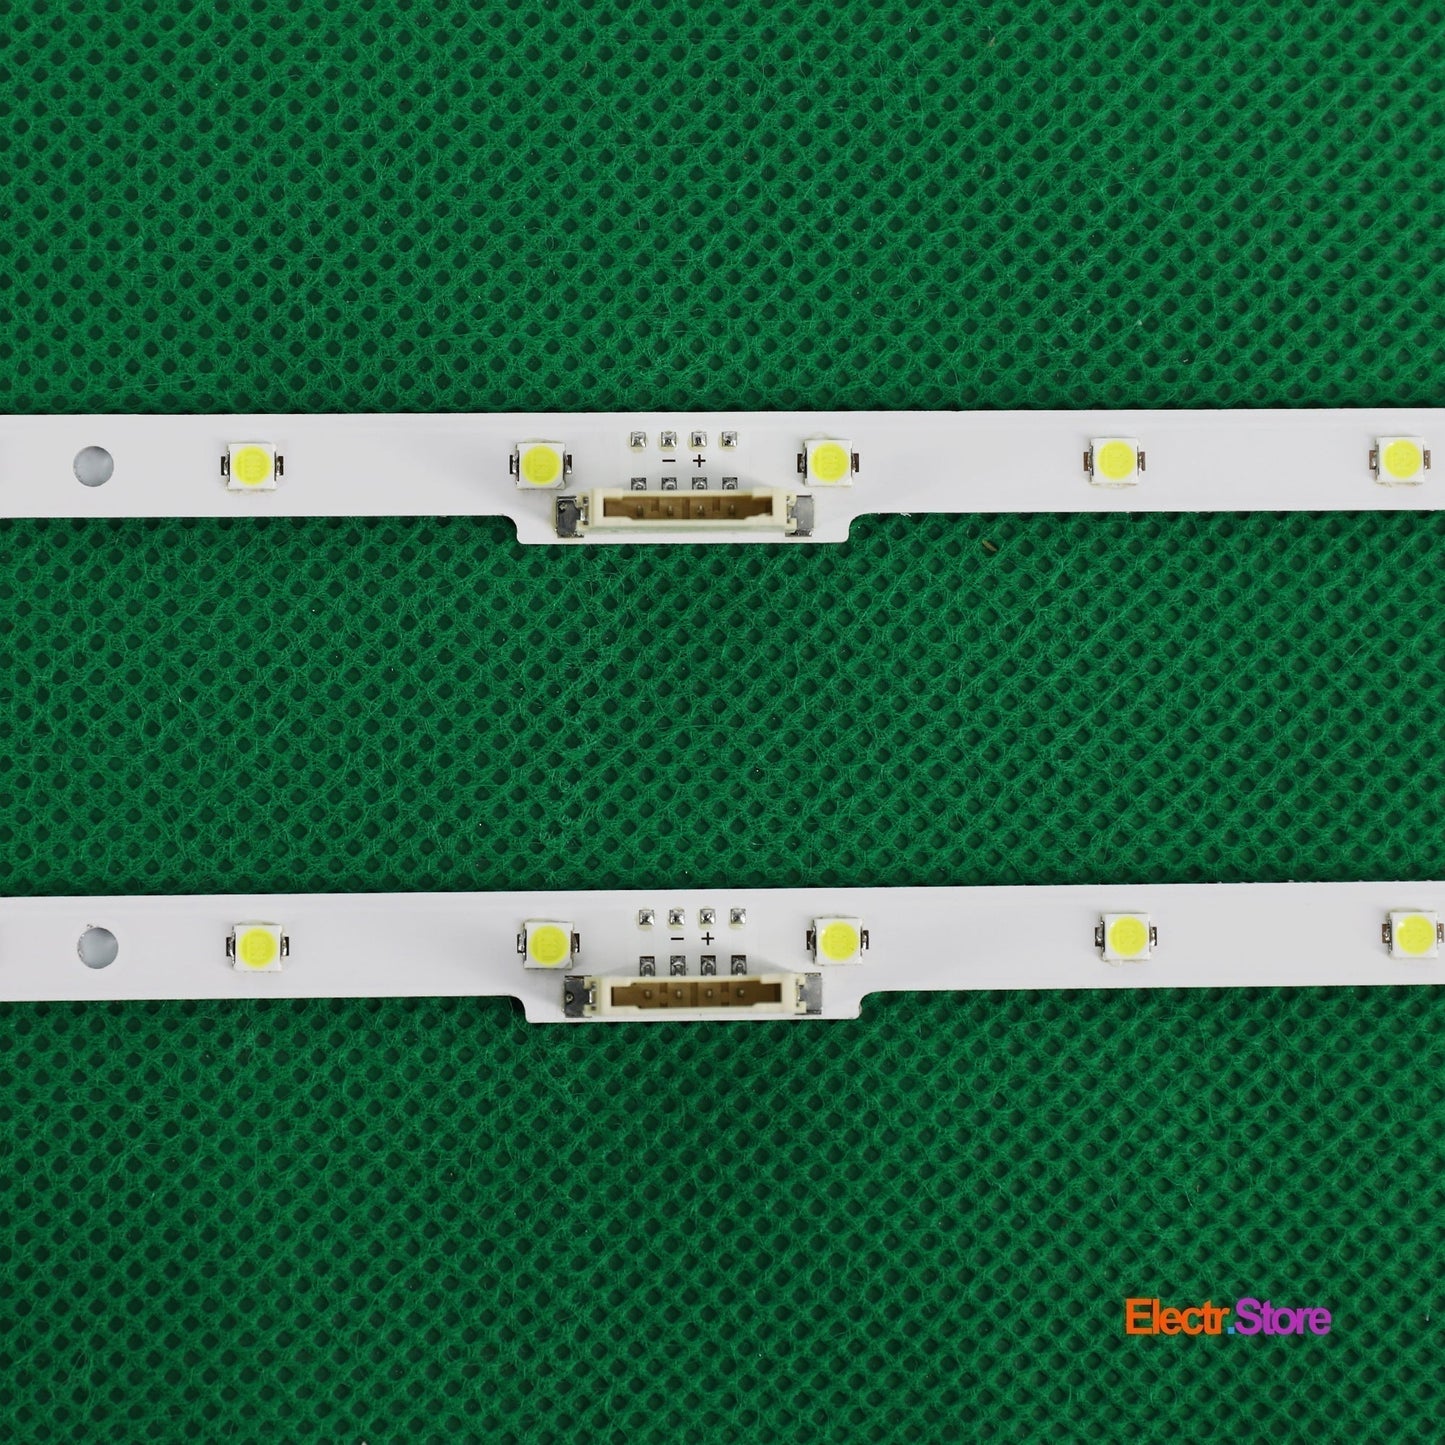 LED Backlight Strip Kits, AOT_40_NU7100F, LM41-00550A, LM41-00549A, BN96-45955A, 2X23LED (2 pcs/kit), for TV 40" SAMSUNG: UN40NU7100FXZC, UN40NU7100GXZD, UN40NU7200FXZA 40" LED Backlights LM41-00550A Samsung Electr.Store